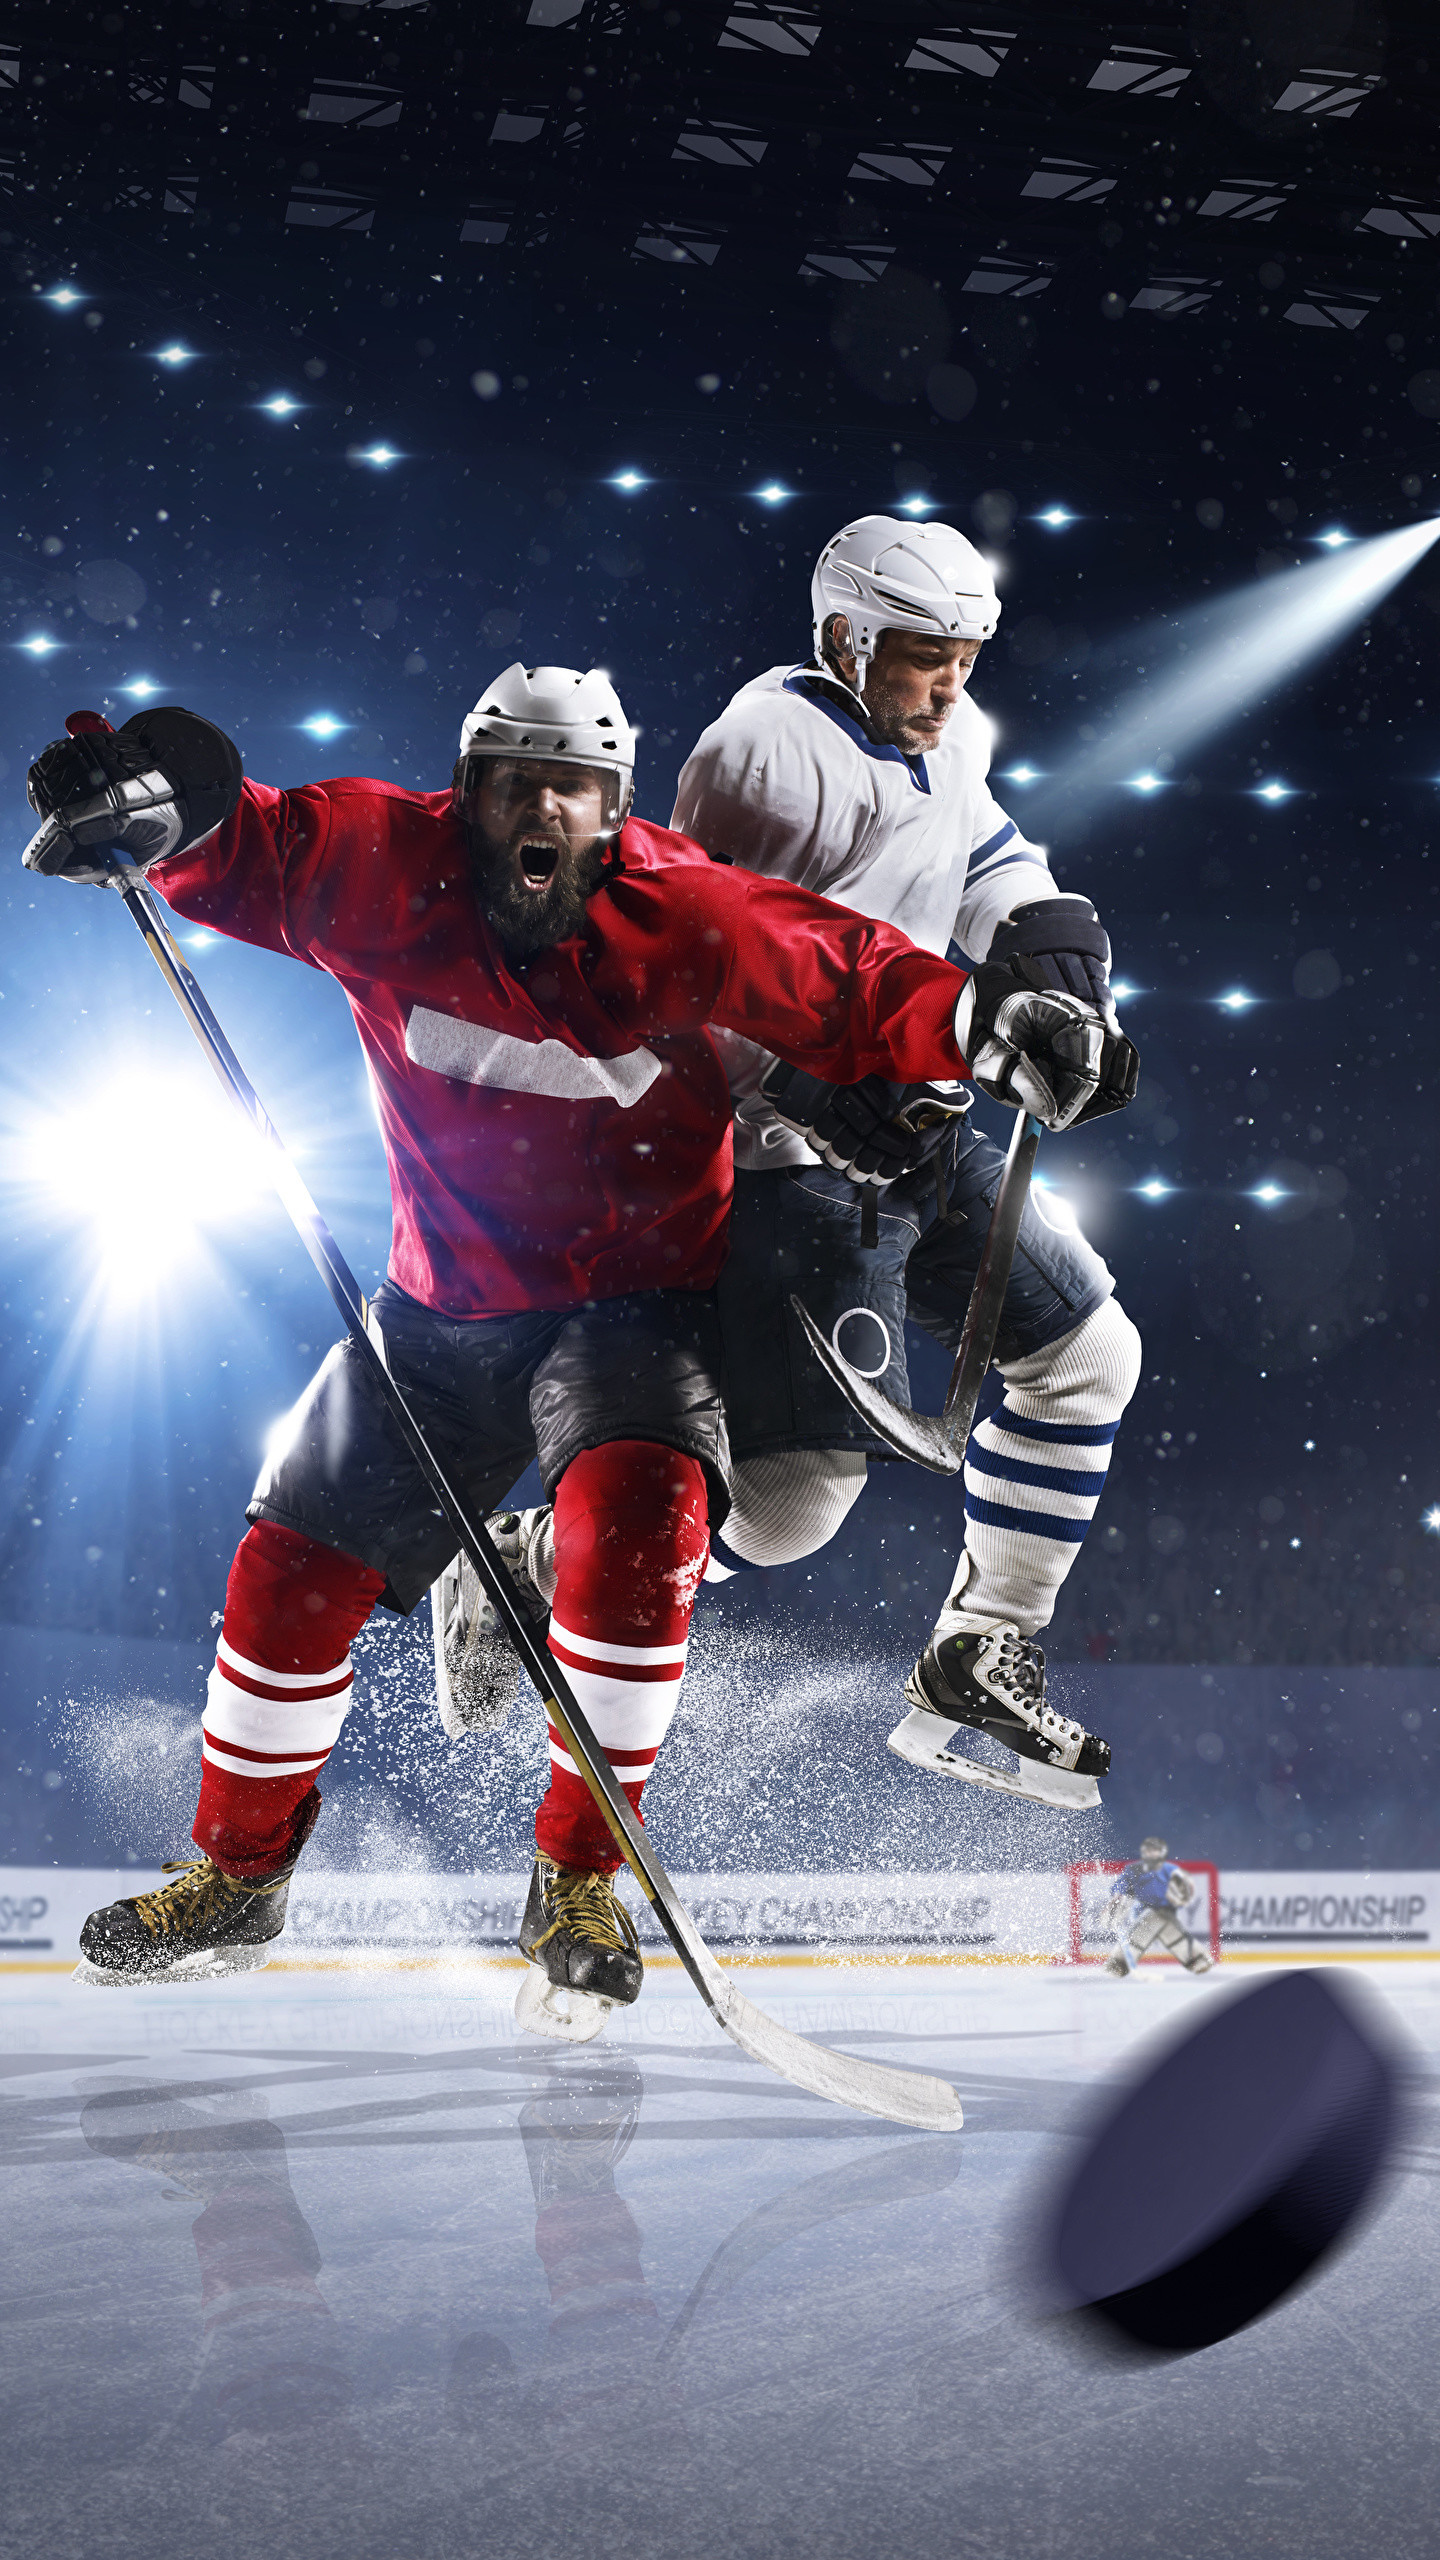 carta da parati per hockey,attrezzatura per hockey su ghiaccio,hockey su ghiaccio,hockey,giochi con il bastone e la palla,equipaggiamento sportivo